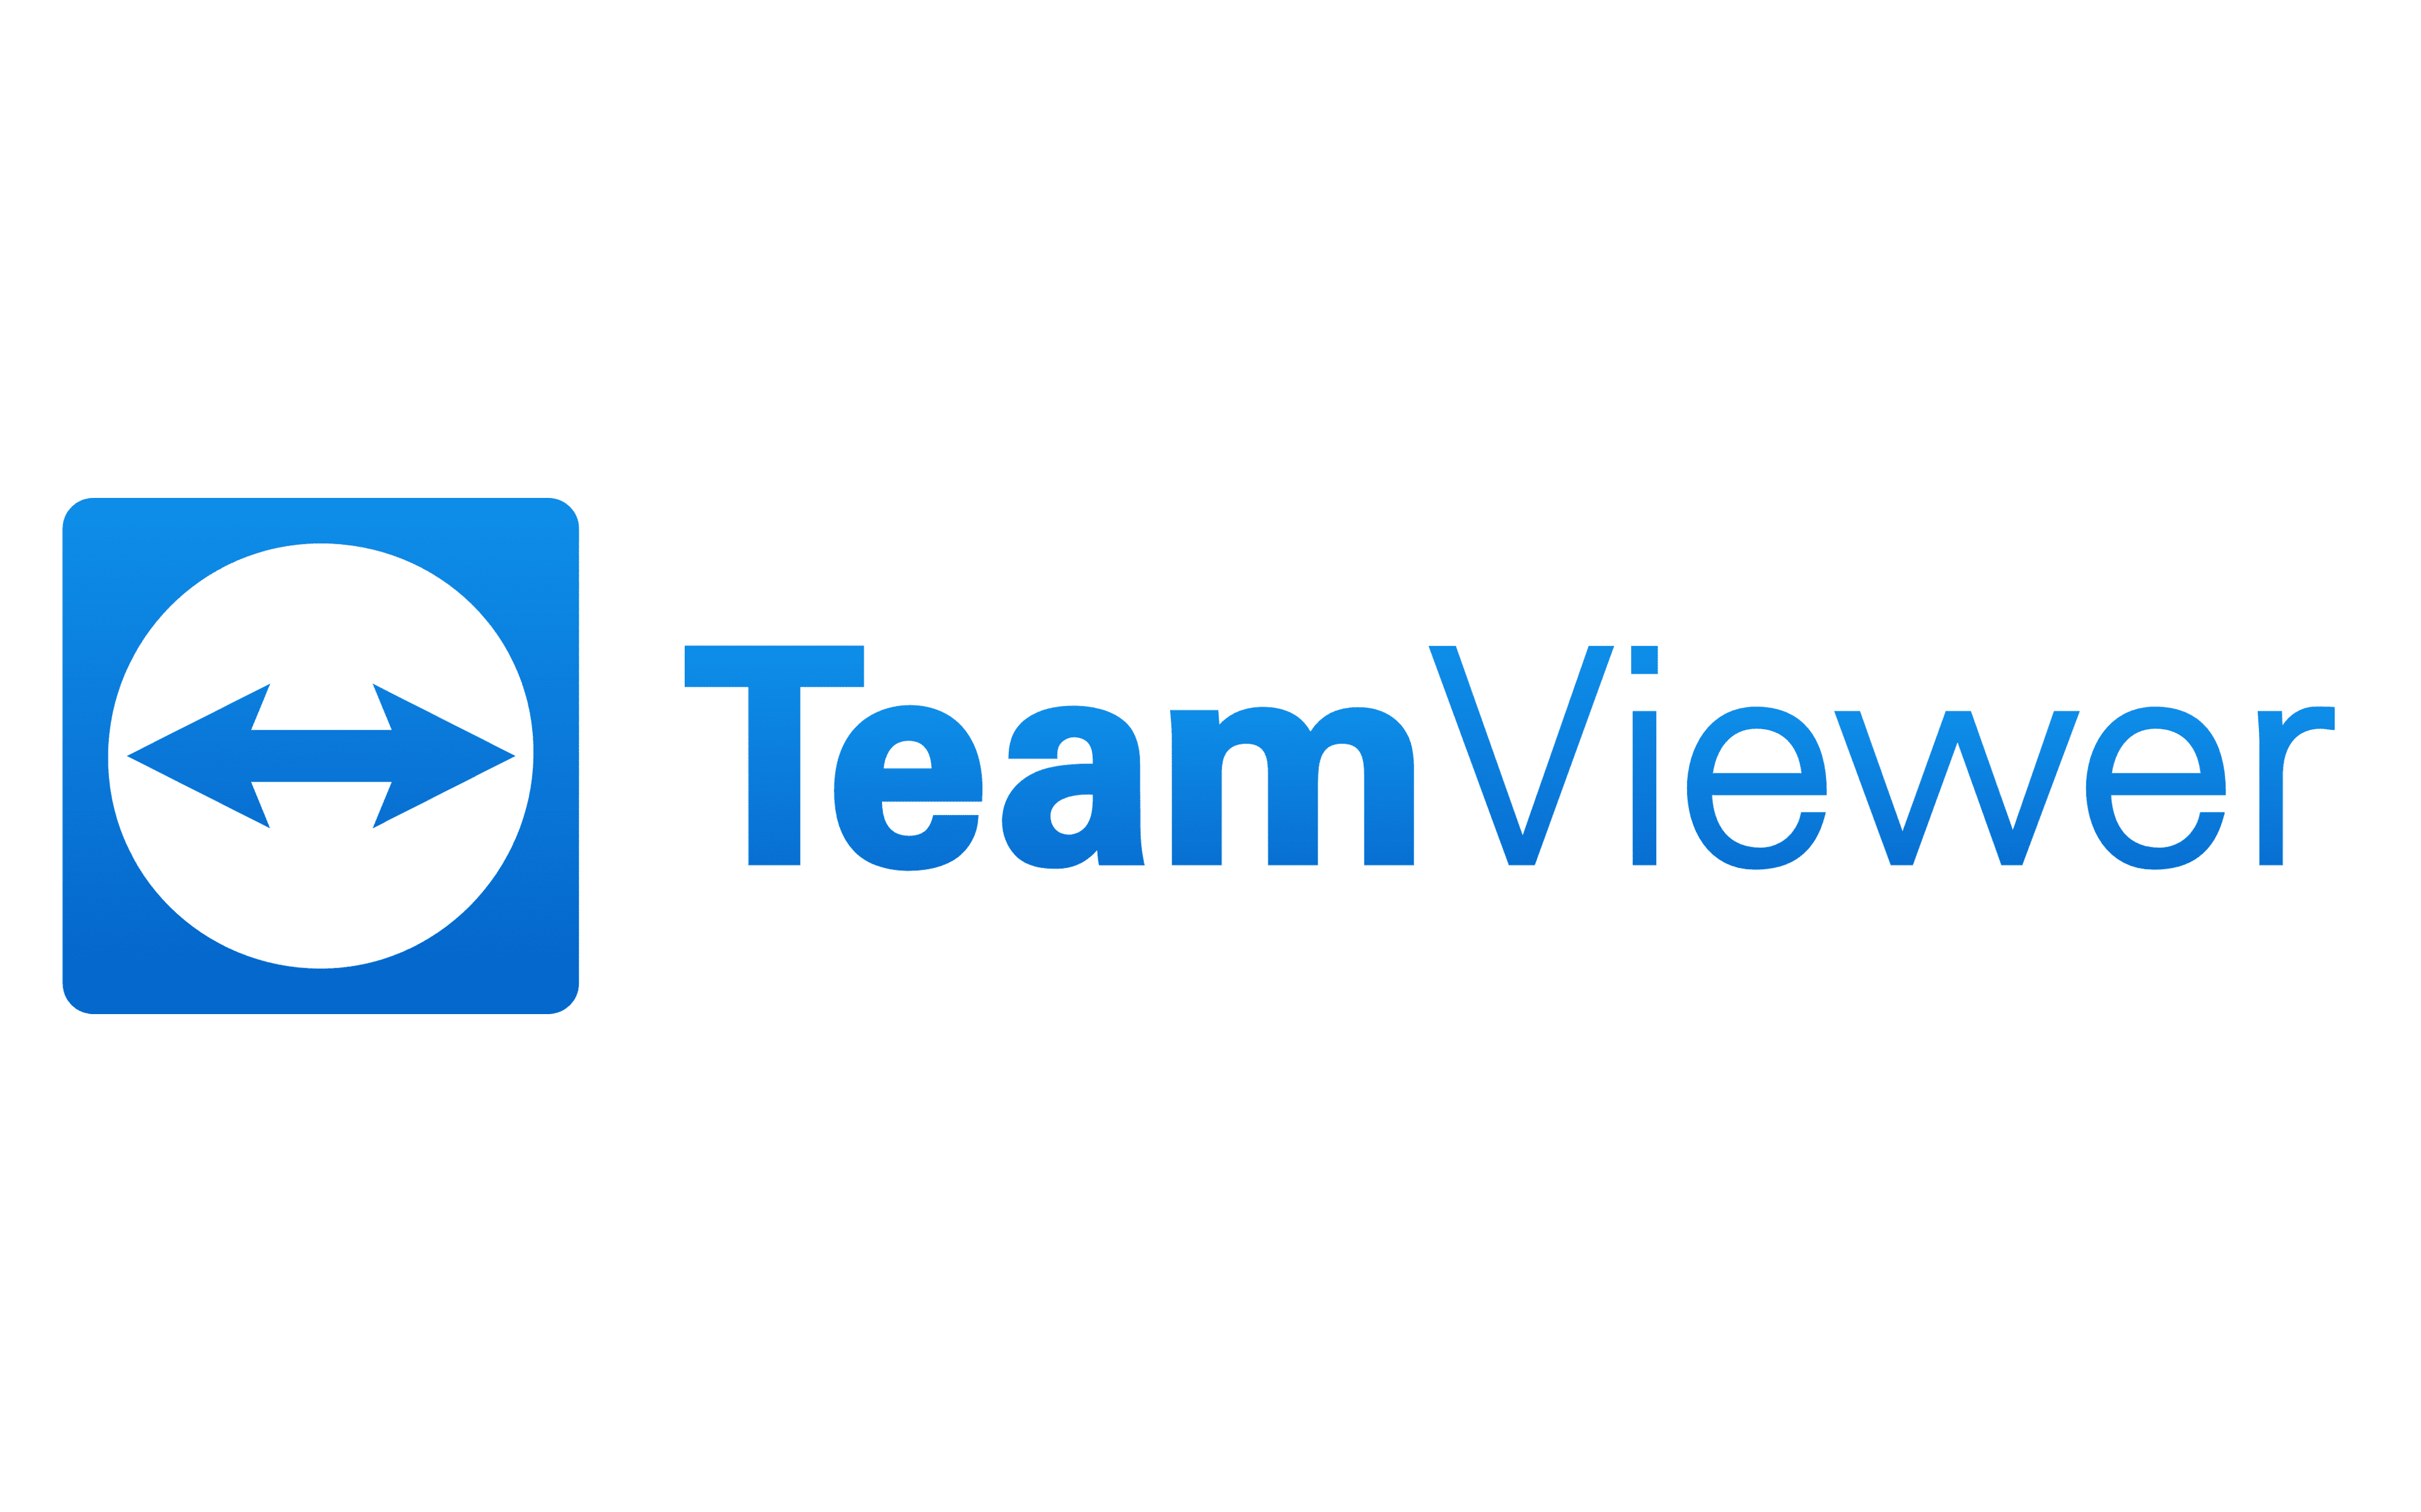 TeamViewer Classroom